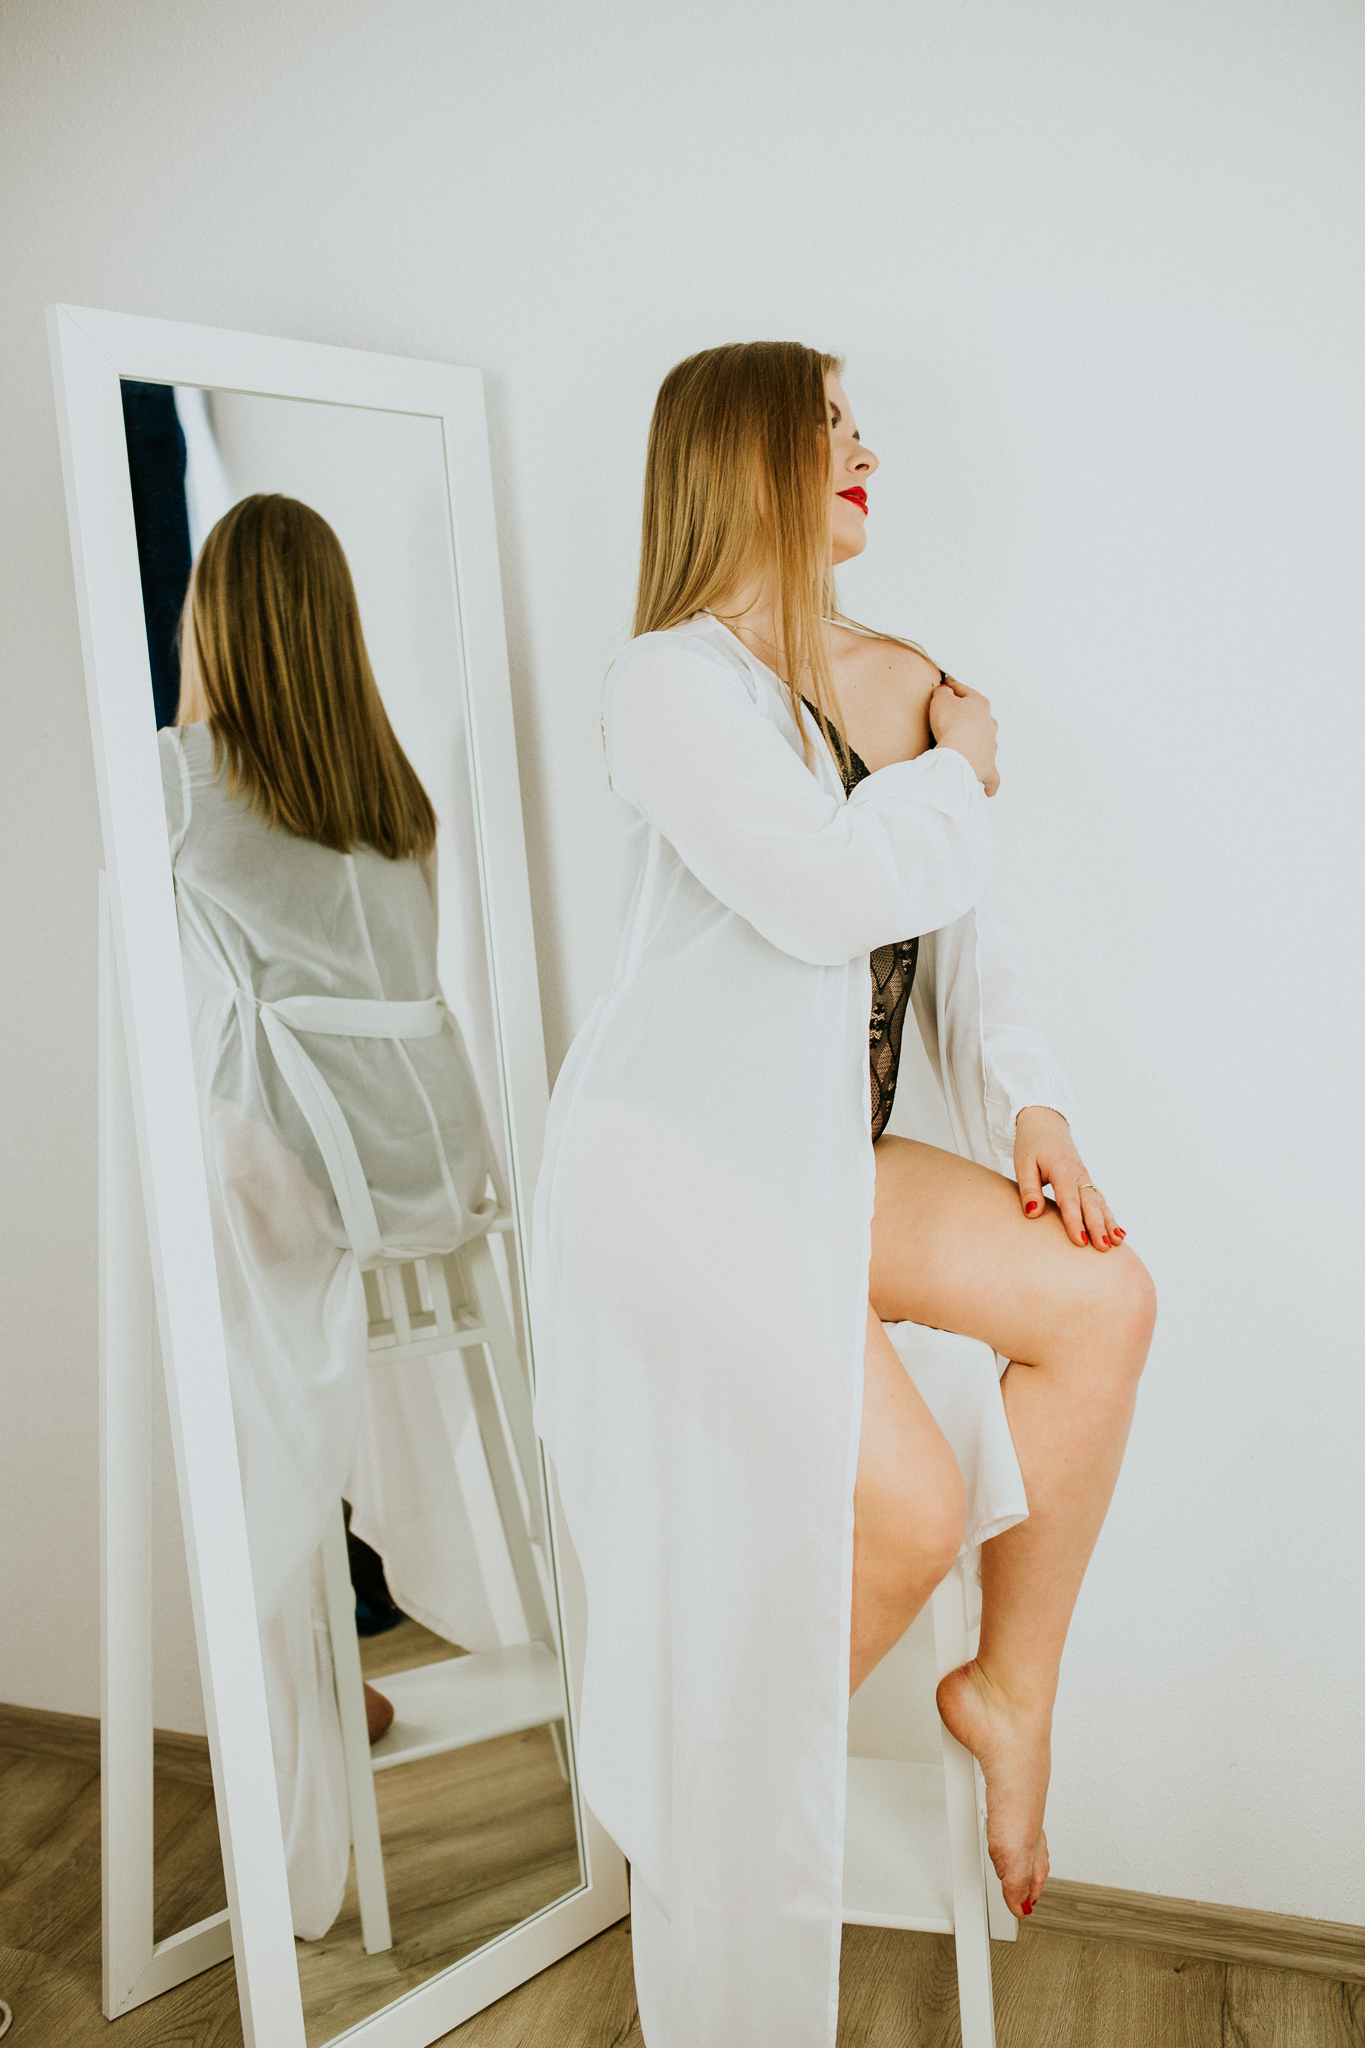 Kobieta w białym szlafroku, która odbija się tyłem w lustrze.